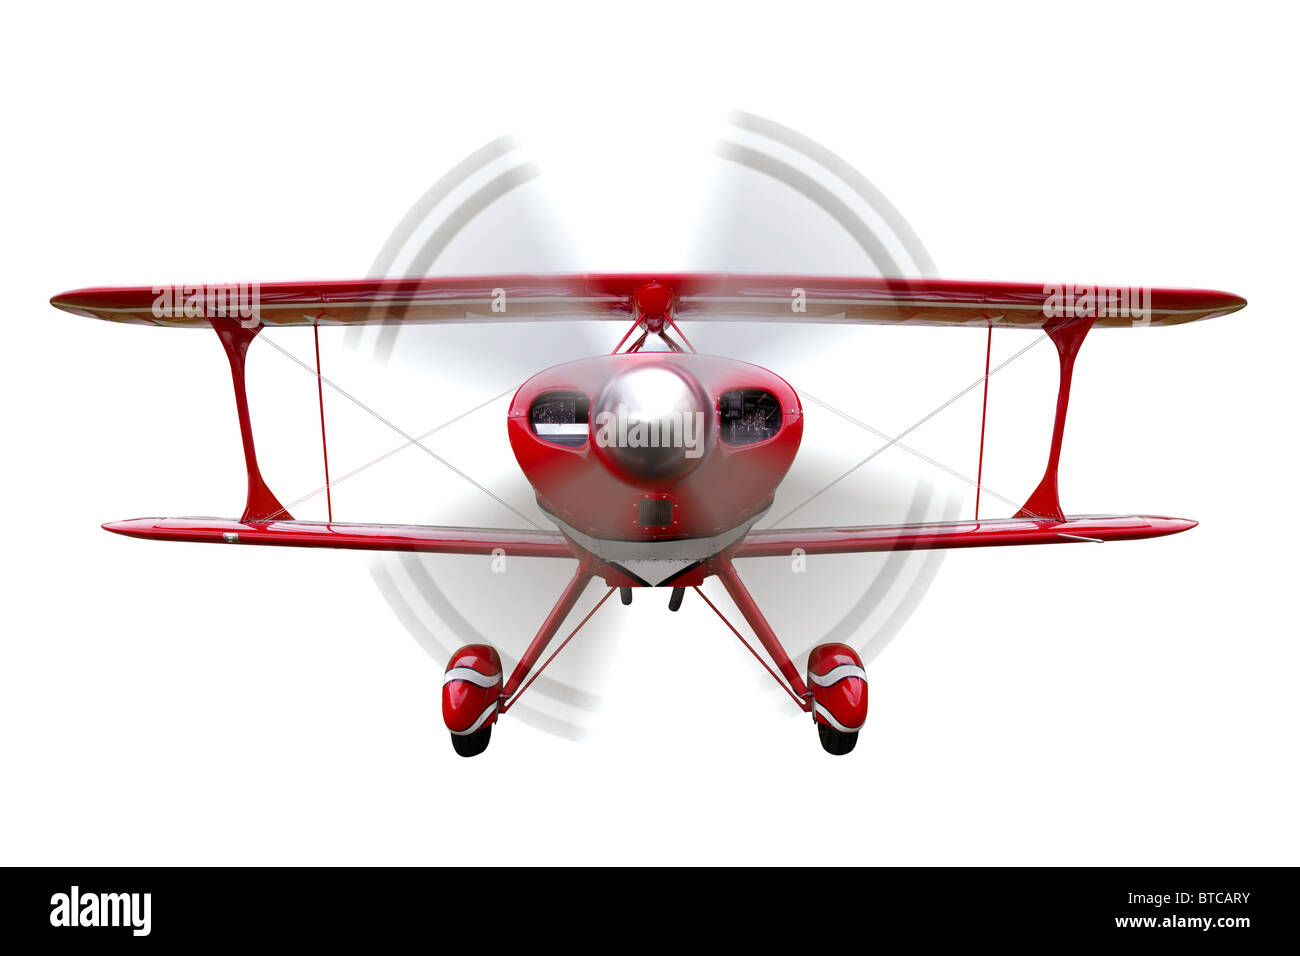 Un biplan rouge, vue de l'avant avec hélice dans Motion, isolé sur un fond blanc. Banque D'Images